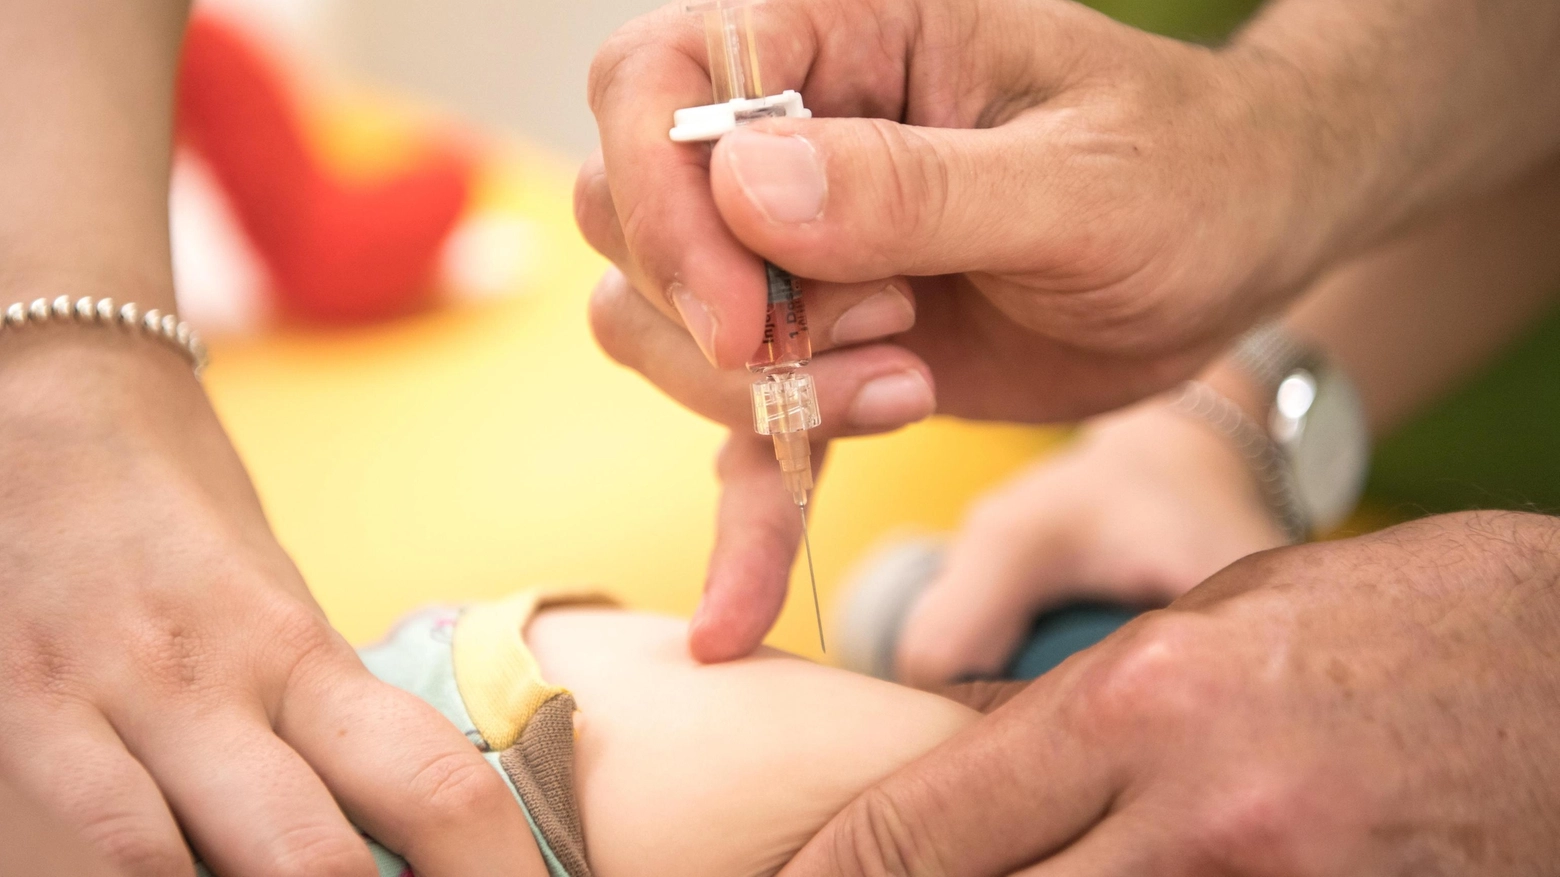 La direttrice dell’Ecdc Andrea Ammon: “È scoraggiante affrontare focolai di malattie prevenibili con il vaccino”. In crescita anche i casi di pertosse